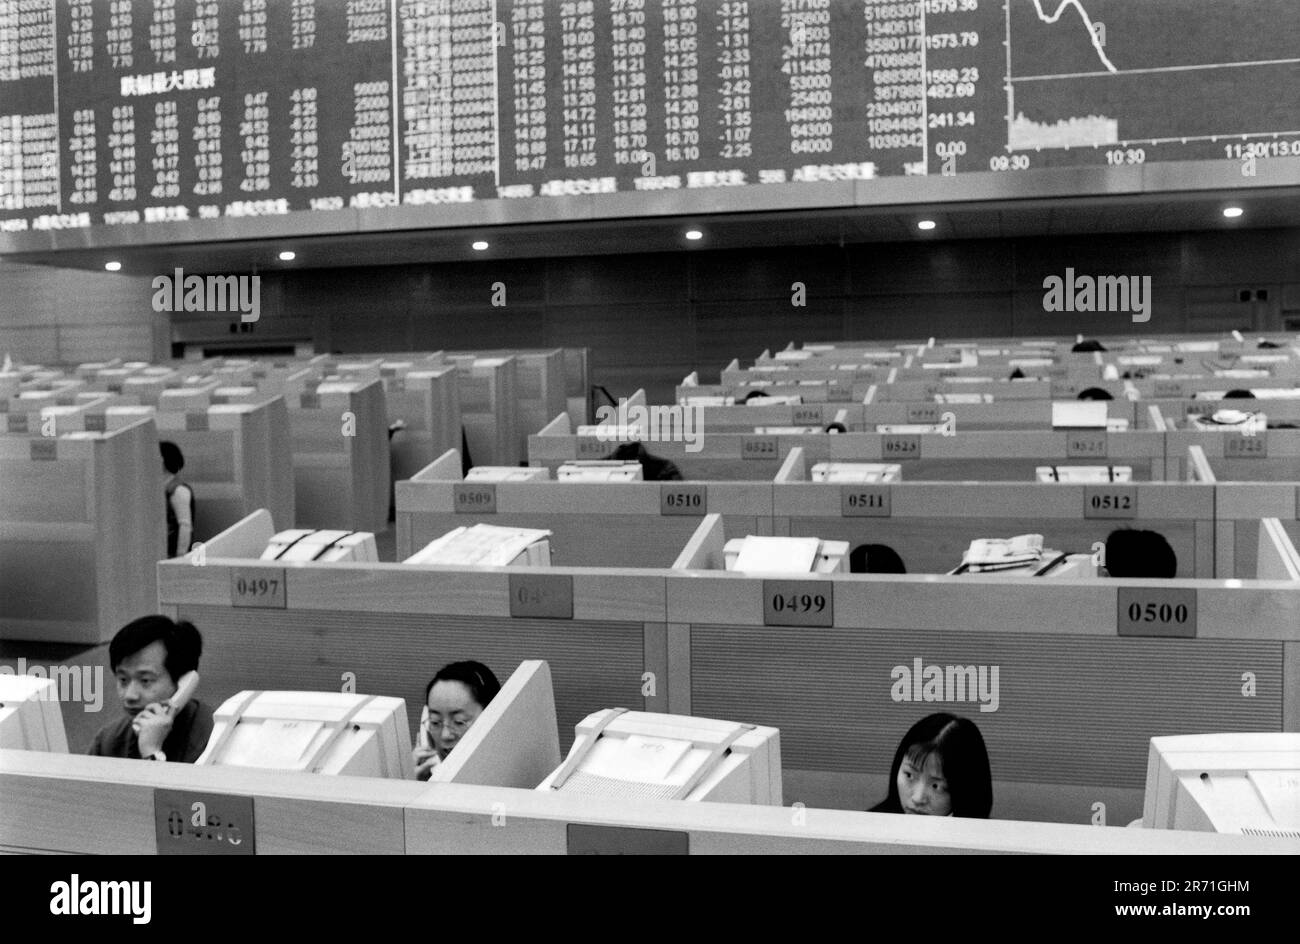 Shanghai China 2000. „Rote Westen“ auf der Handelsebene der Shanghai-Börse in Pudong, die Ende 1997 eröffnet wurde. Die größte Börse auf dem chinesischen Festland, die erst 1990 in Shanghai gegründet wurde, verfügt jetzt aber über mehr als 600 börsennotierte Unternehmen, und der Markt ist der zweitgrößte im asiatisch-pazifischen Raum. Es ist die Politik der Regierung, die Menschen dazu zu ermutigen, sich am Aktienmarkt zu beteiligen, da viele börsennotierte Unternehmen sich in staatlichem Besitz befinden oder früher in Staatsbesitz waren und dringend Kapital benötigen. 2000s HOMER SYKES Stockfoto